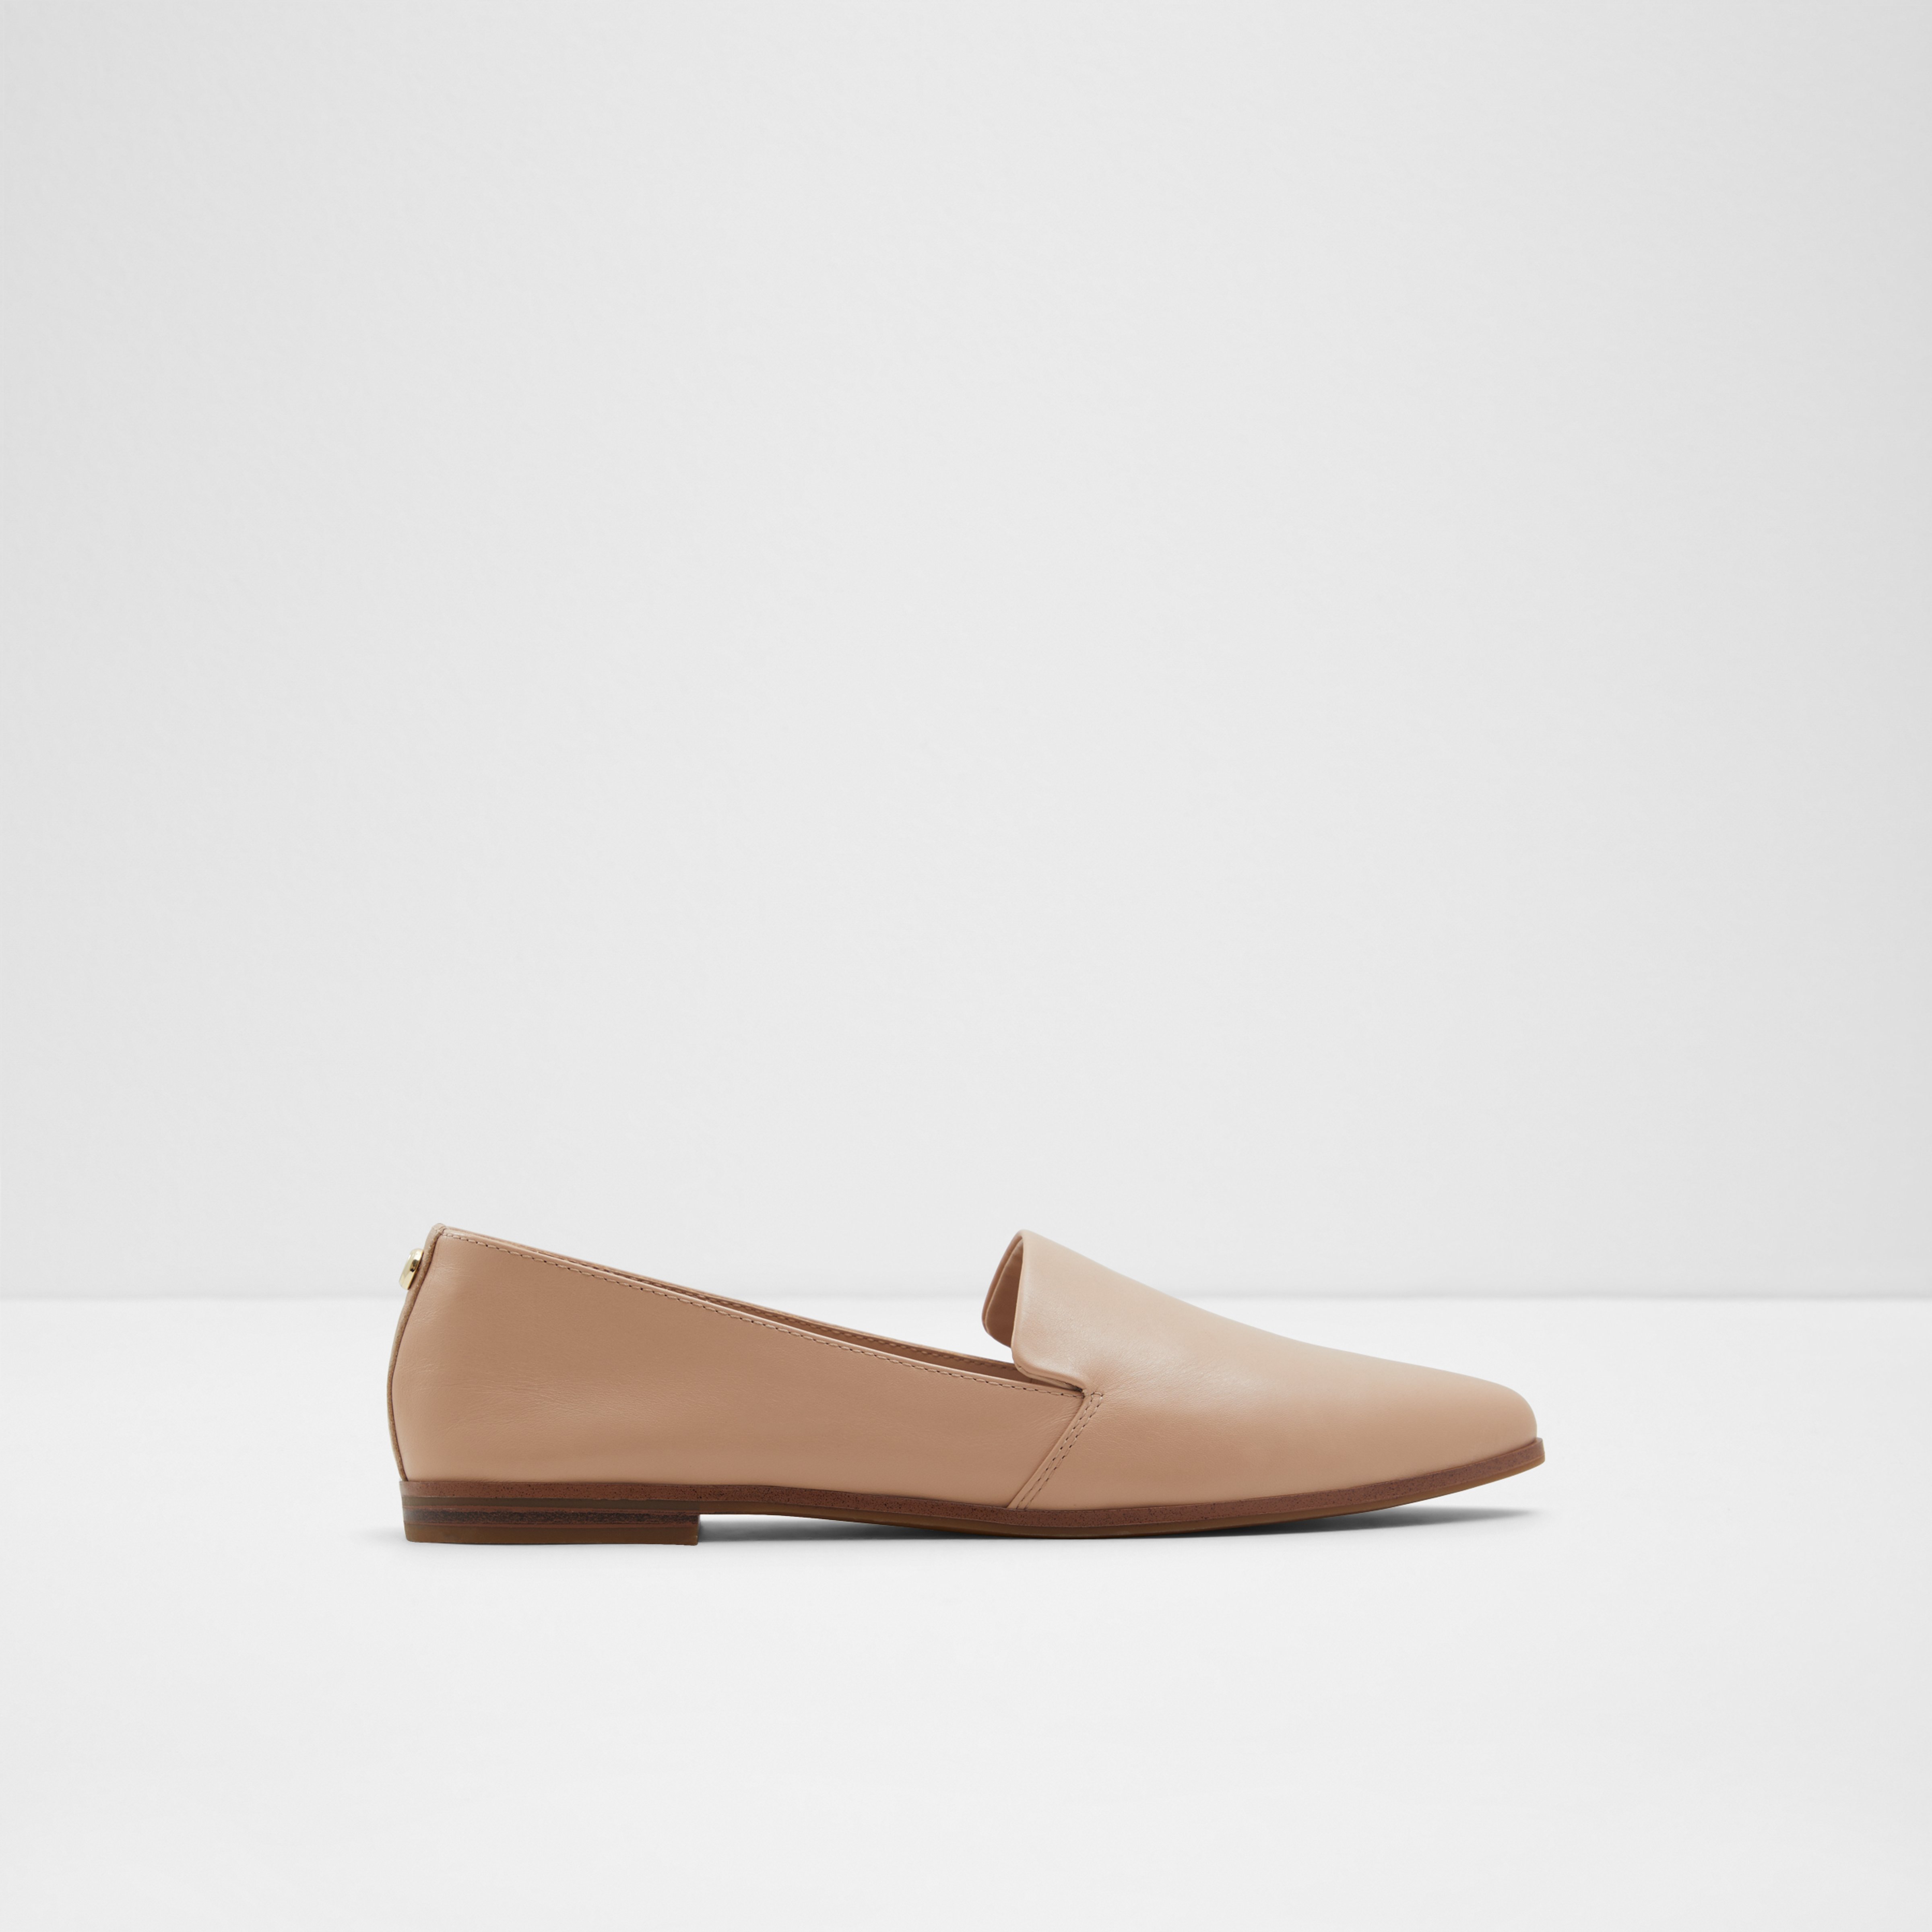 Aldo Shoes Caumeth-270-001-043 - Women